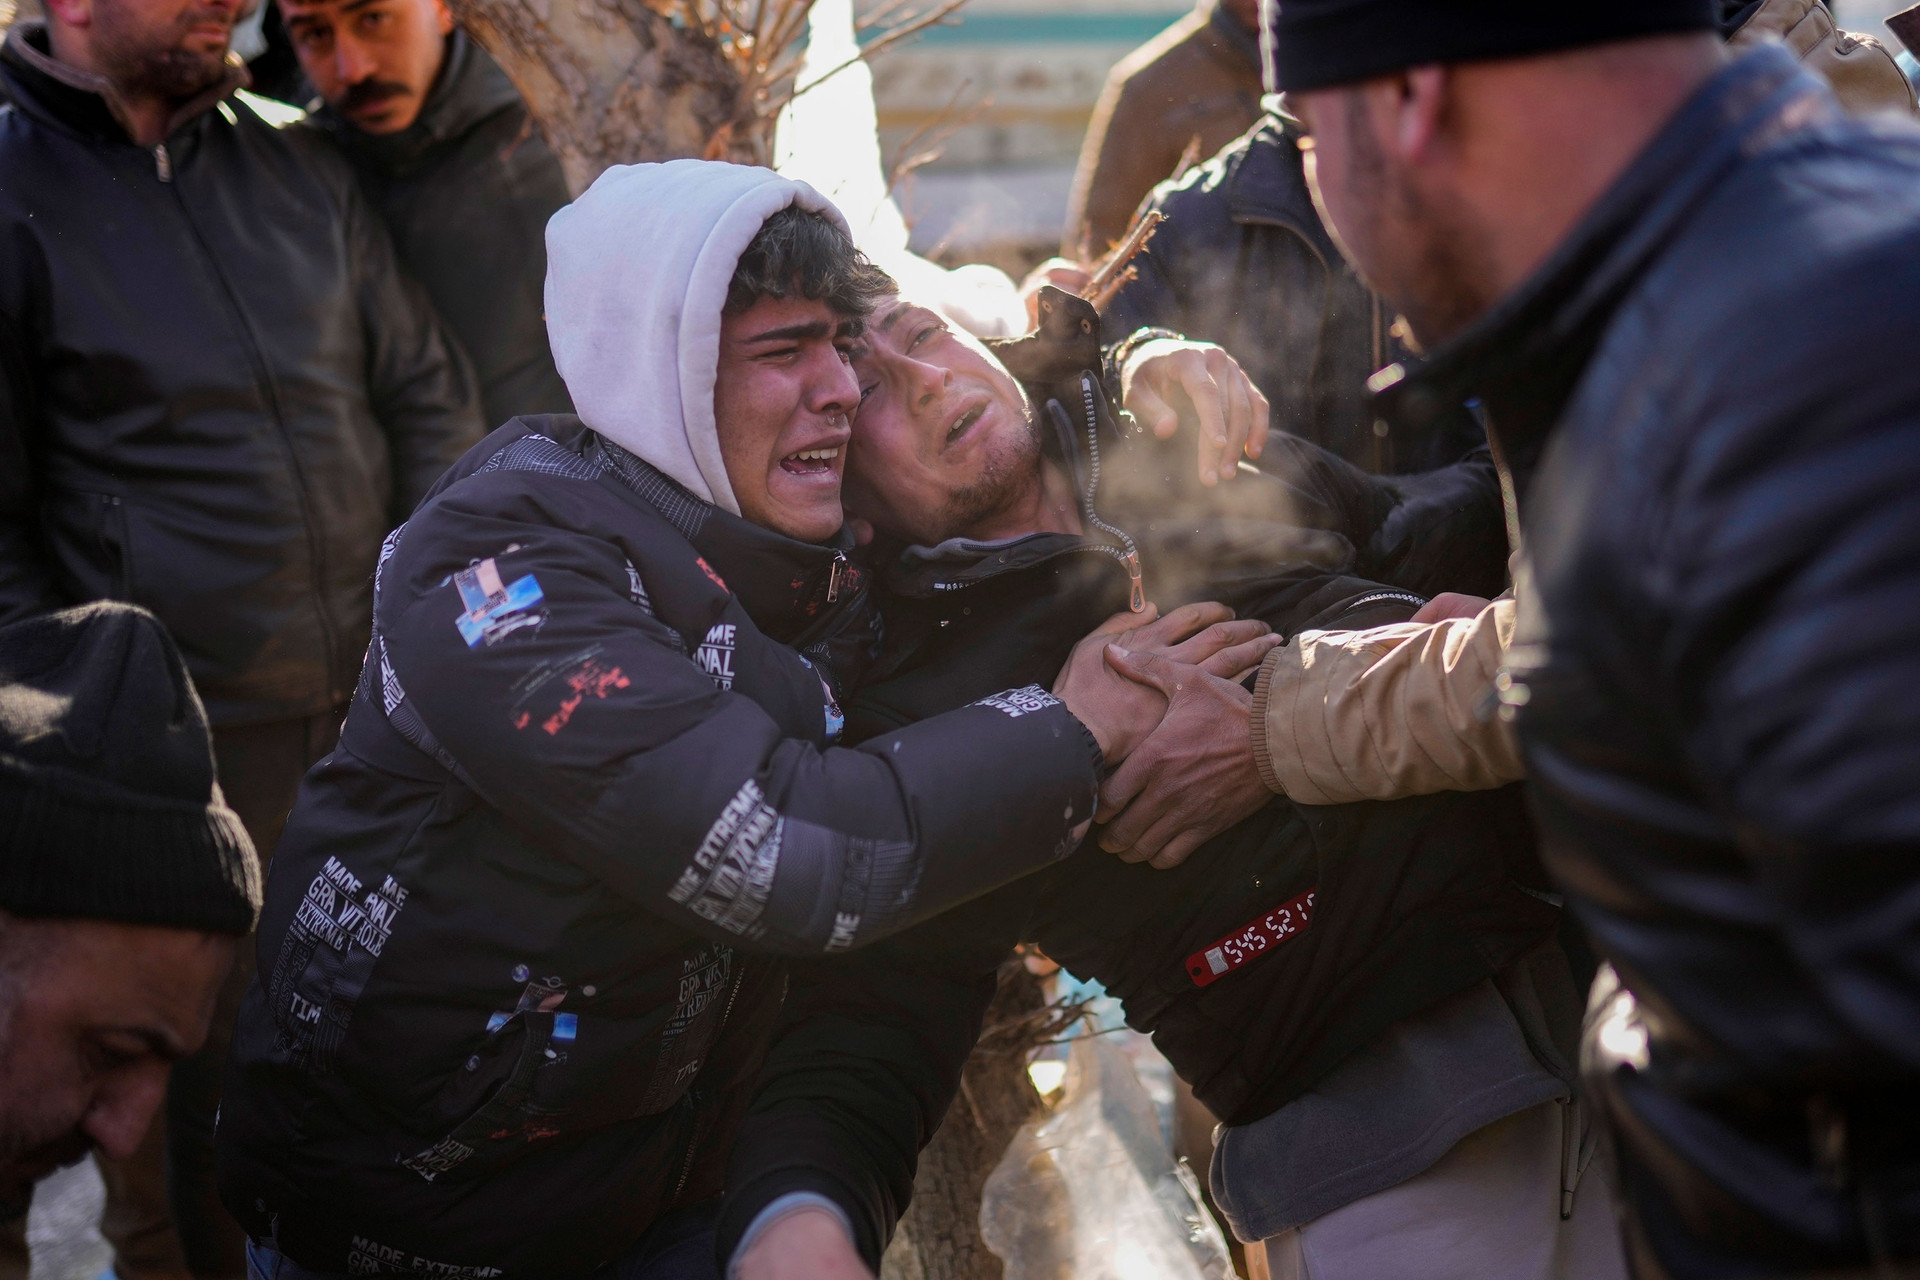 21.000 người chết do động đất, Thổ Nhĩ Kỳ, Syria đối mặt thảm họa nhân đạo - 3